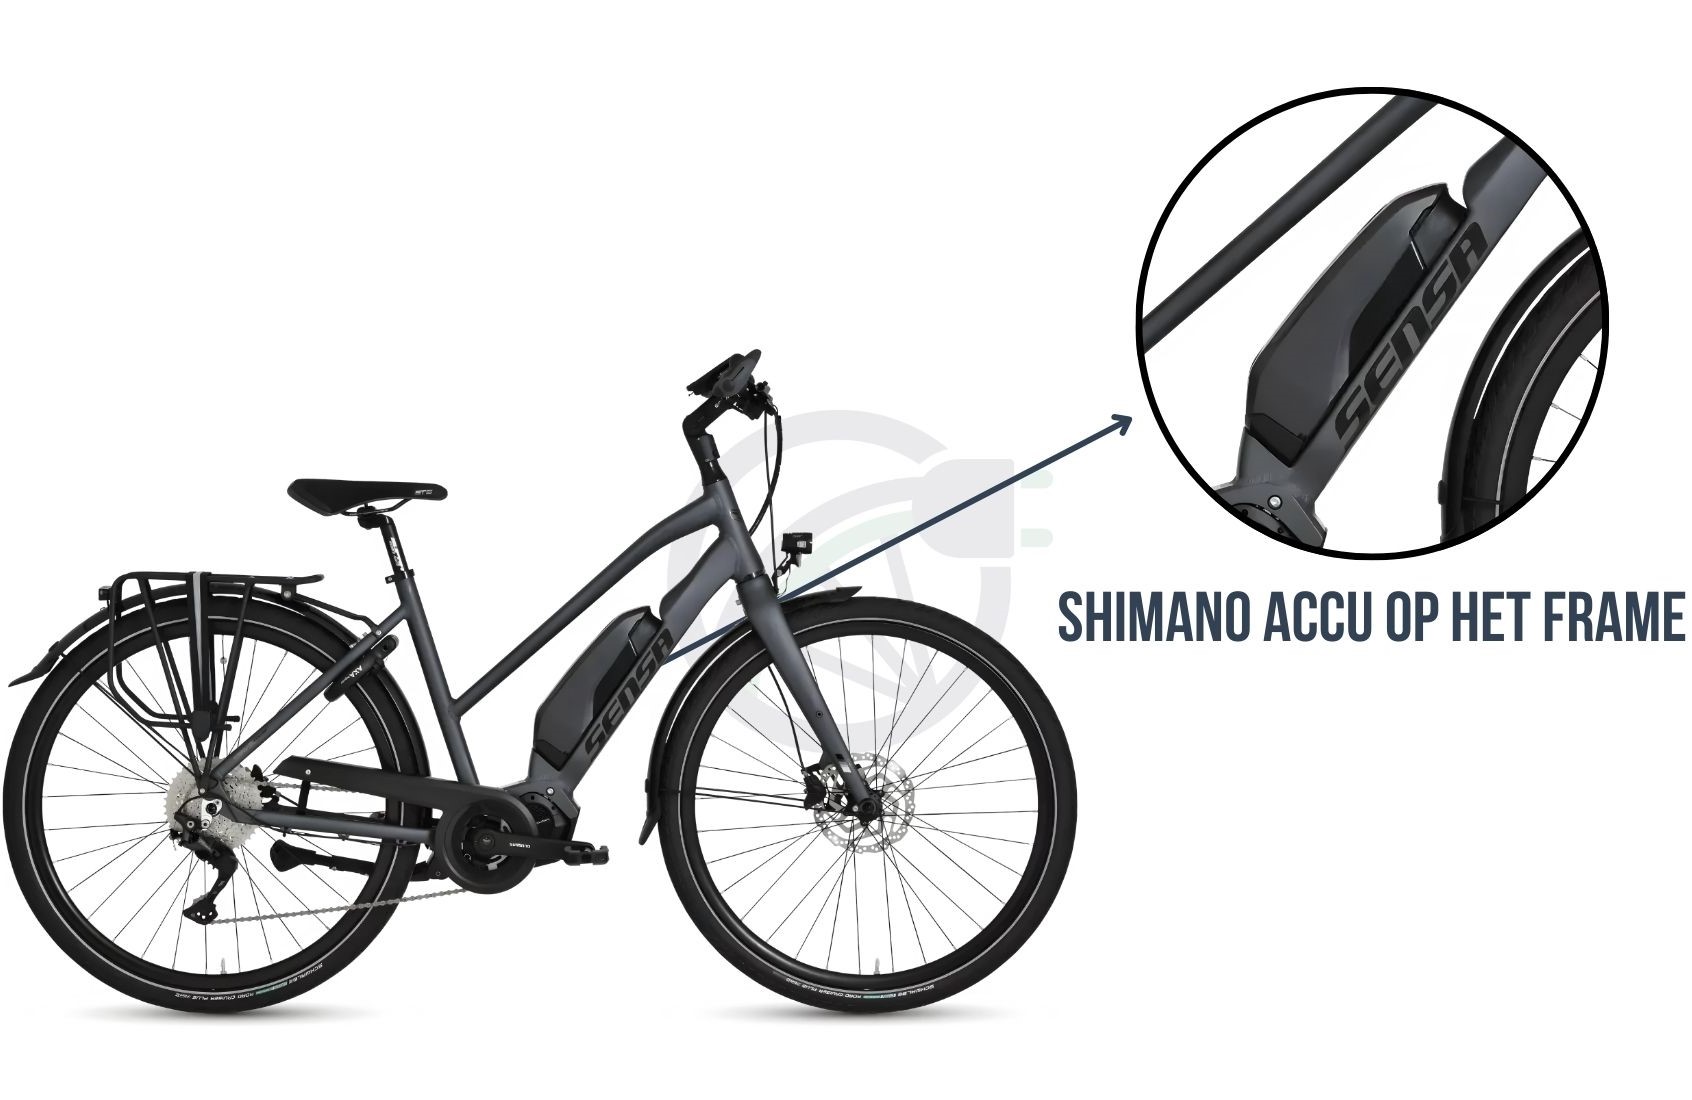 Fiets met uitgelicht waar op de fiets, de accu geplaatst dient te worden (in dit geval op het frame). Daarnaast is er beschreven welke Shimano accu er op deze fiets geplaatst kan worden.